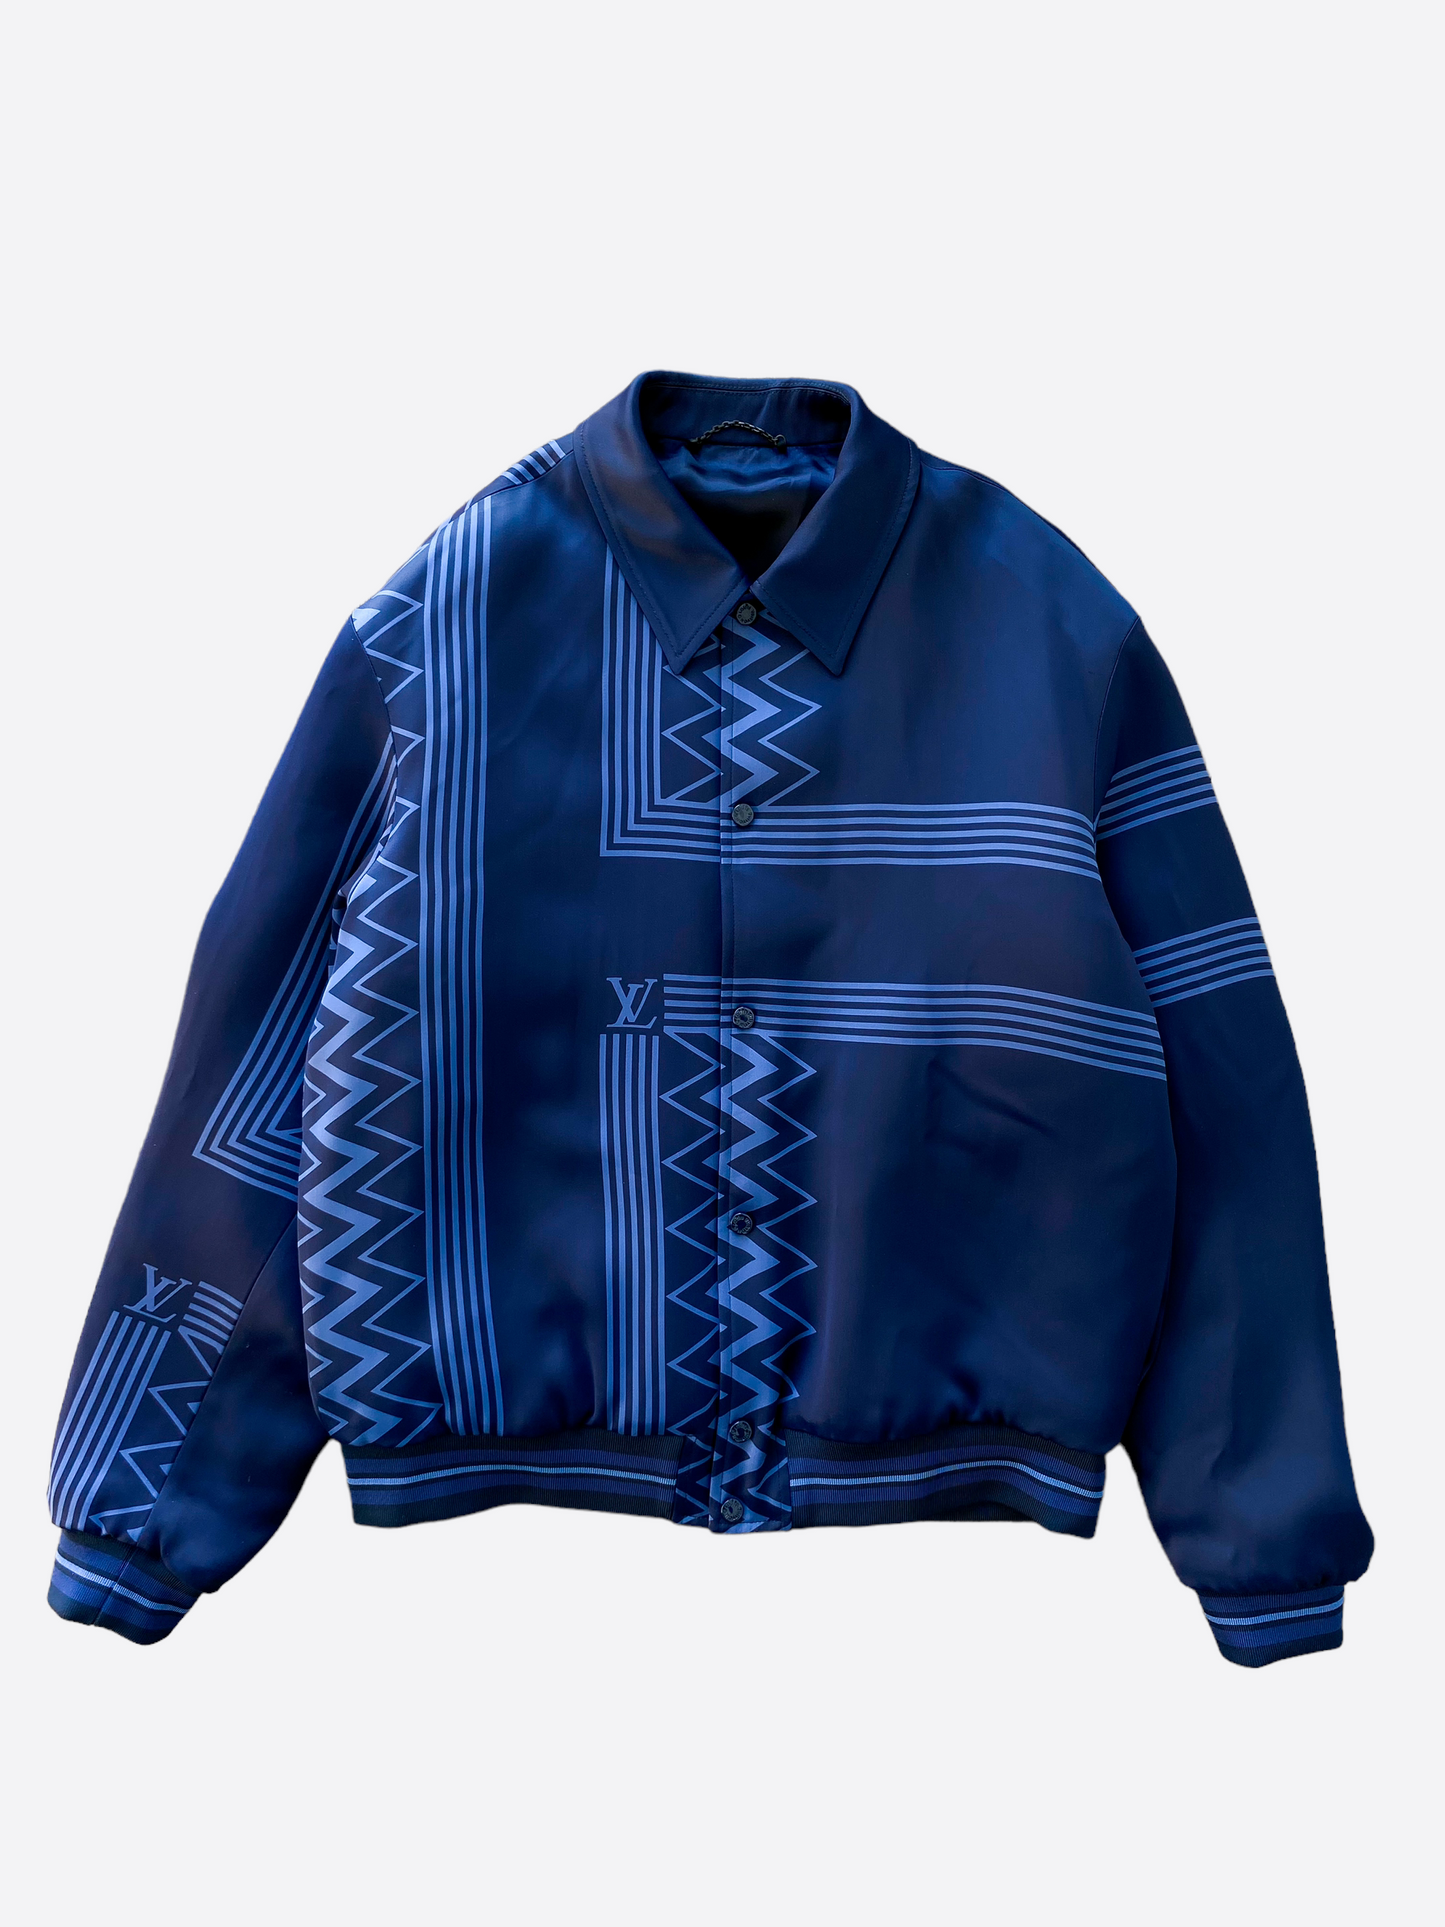 Louis Vuitton Karakoram Shirt Jacket BLACK. Size 50